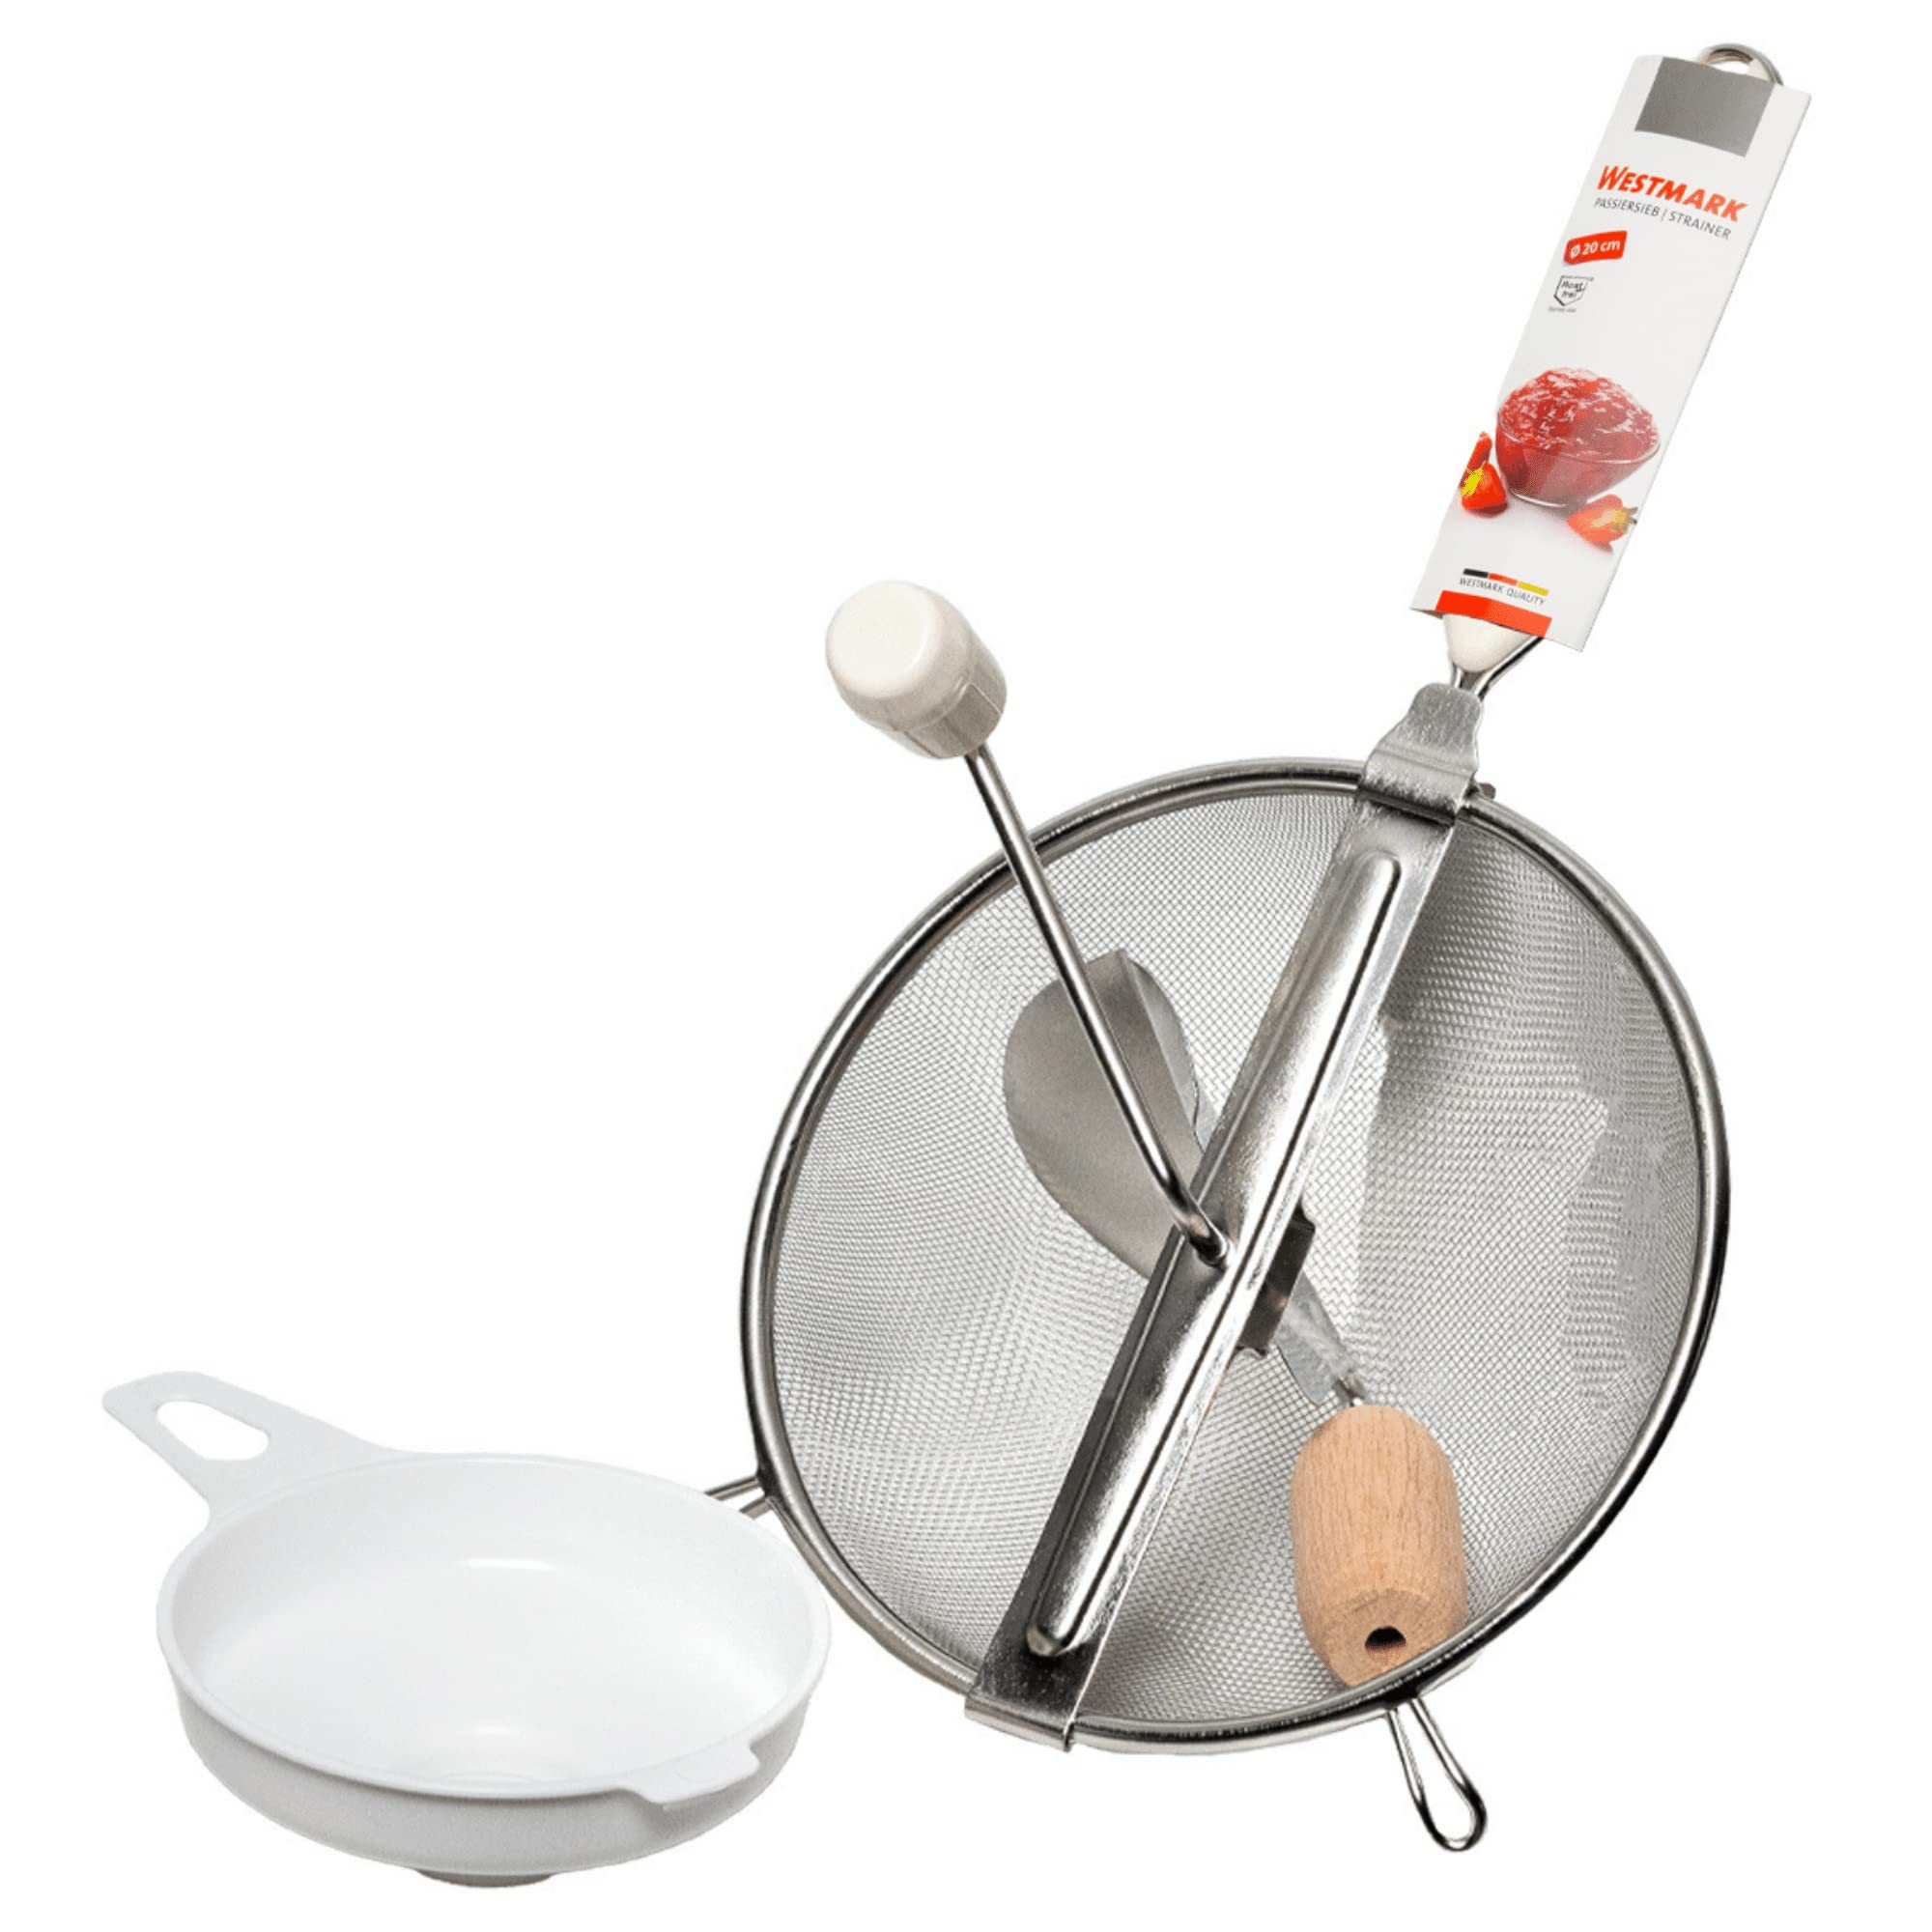 Westmark Einkoch-Set S- Küchensieb & Einmach-Trichter für Marmelade, Mus oder Brei - 20cm Durchmesser - besonders einfache Reinigung (2-teilig)